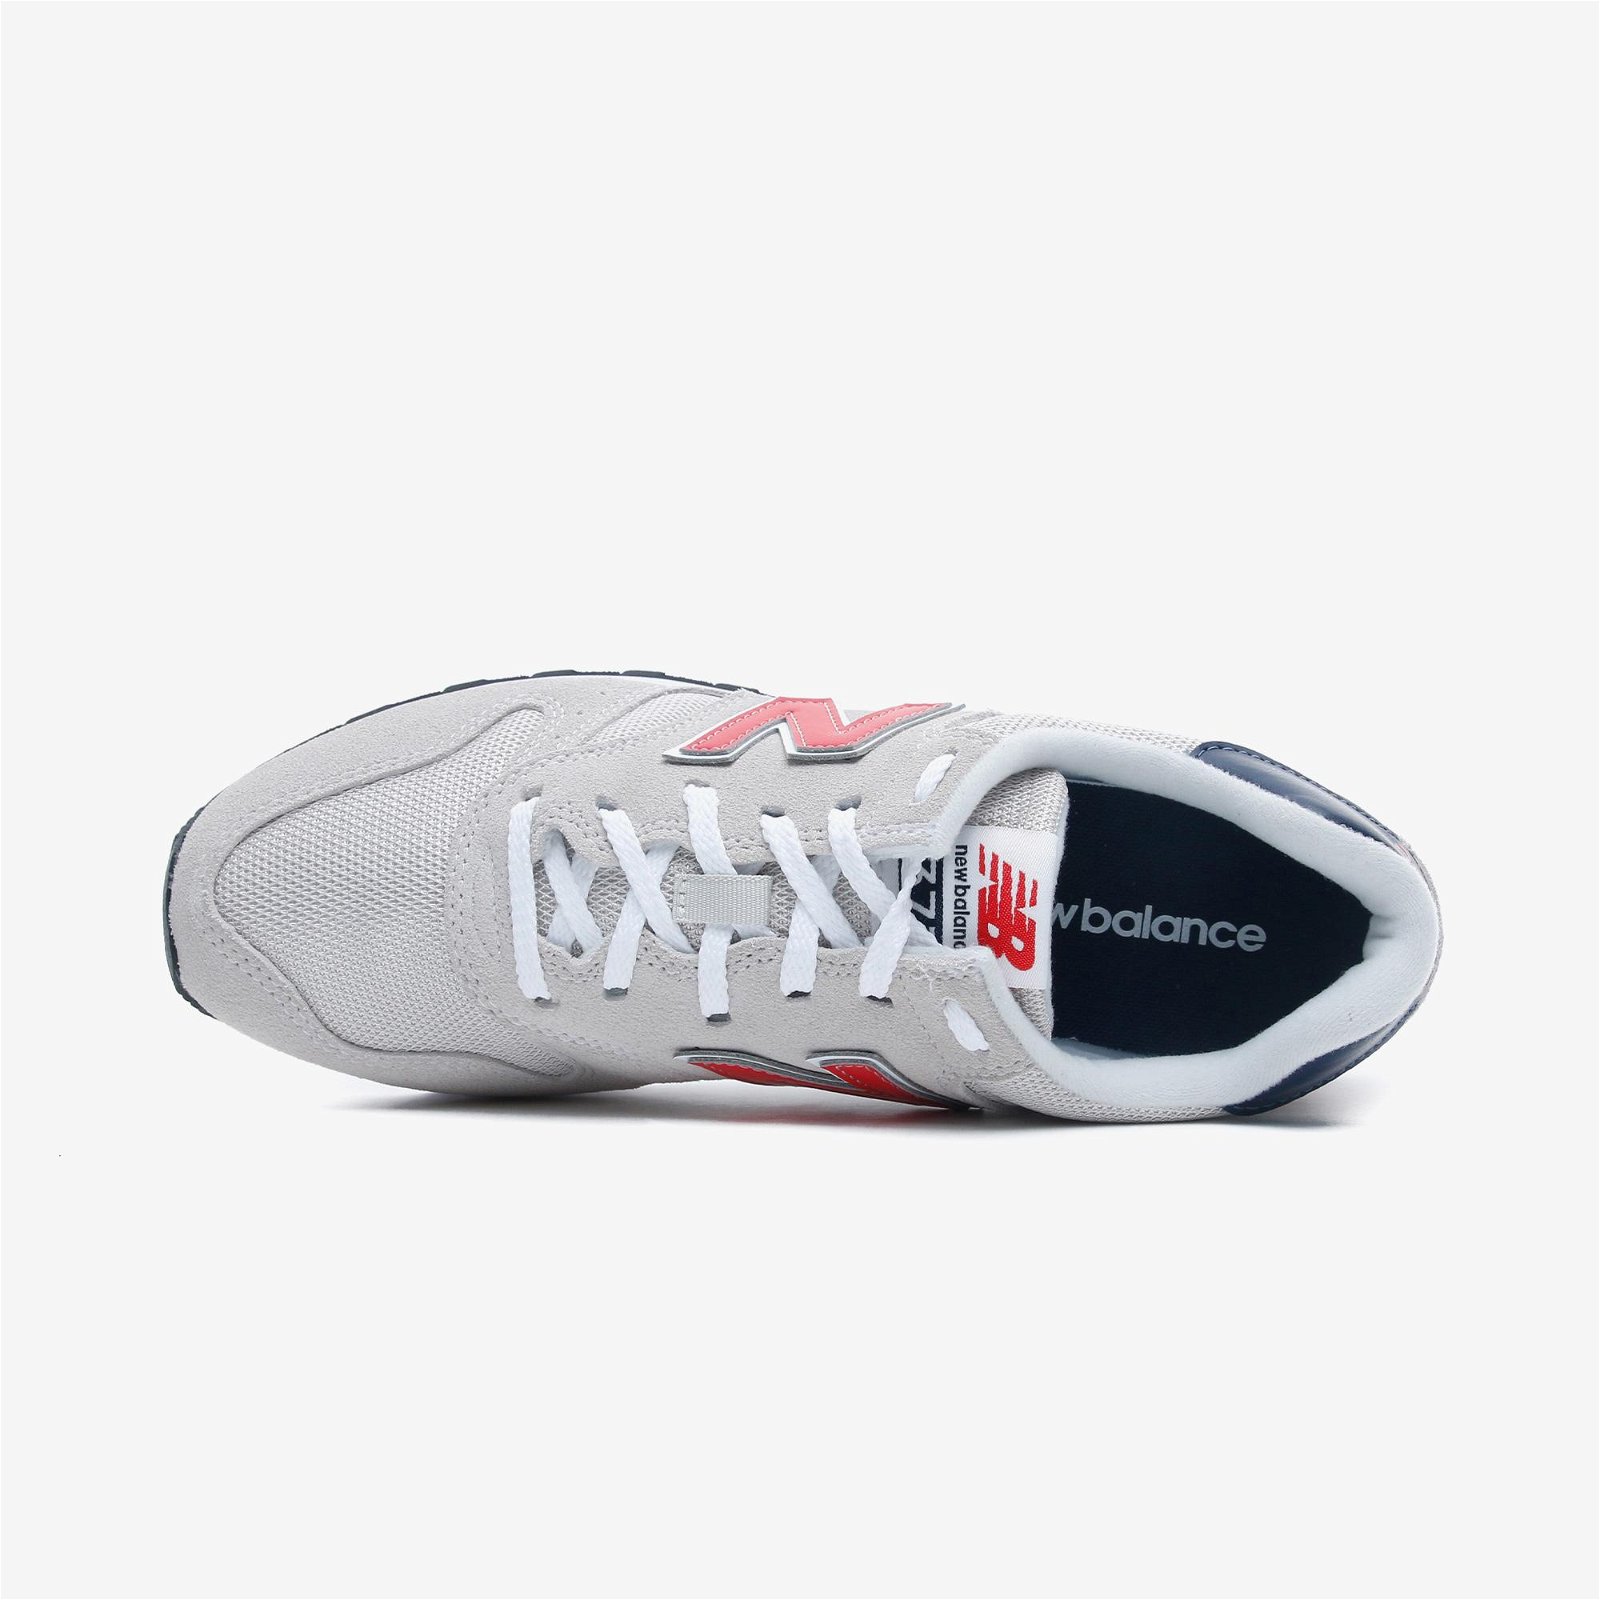 New Balance 373 Beyaz Spor Ayakkabı